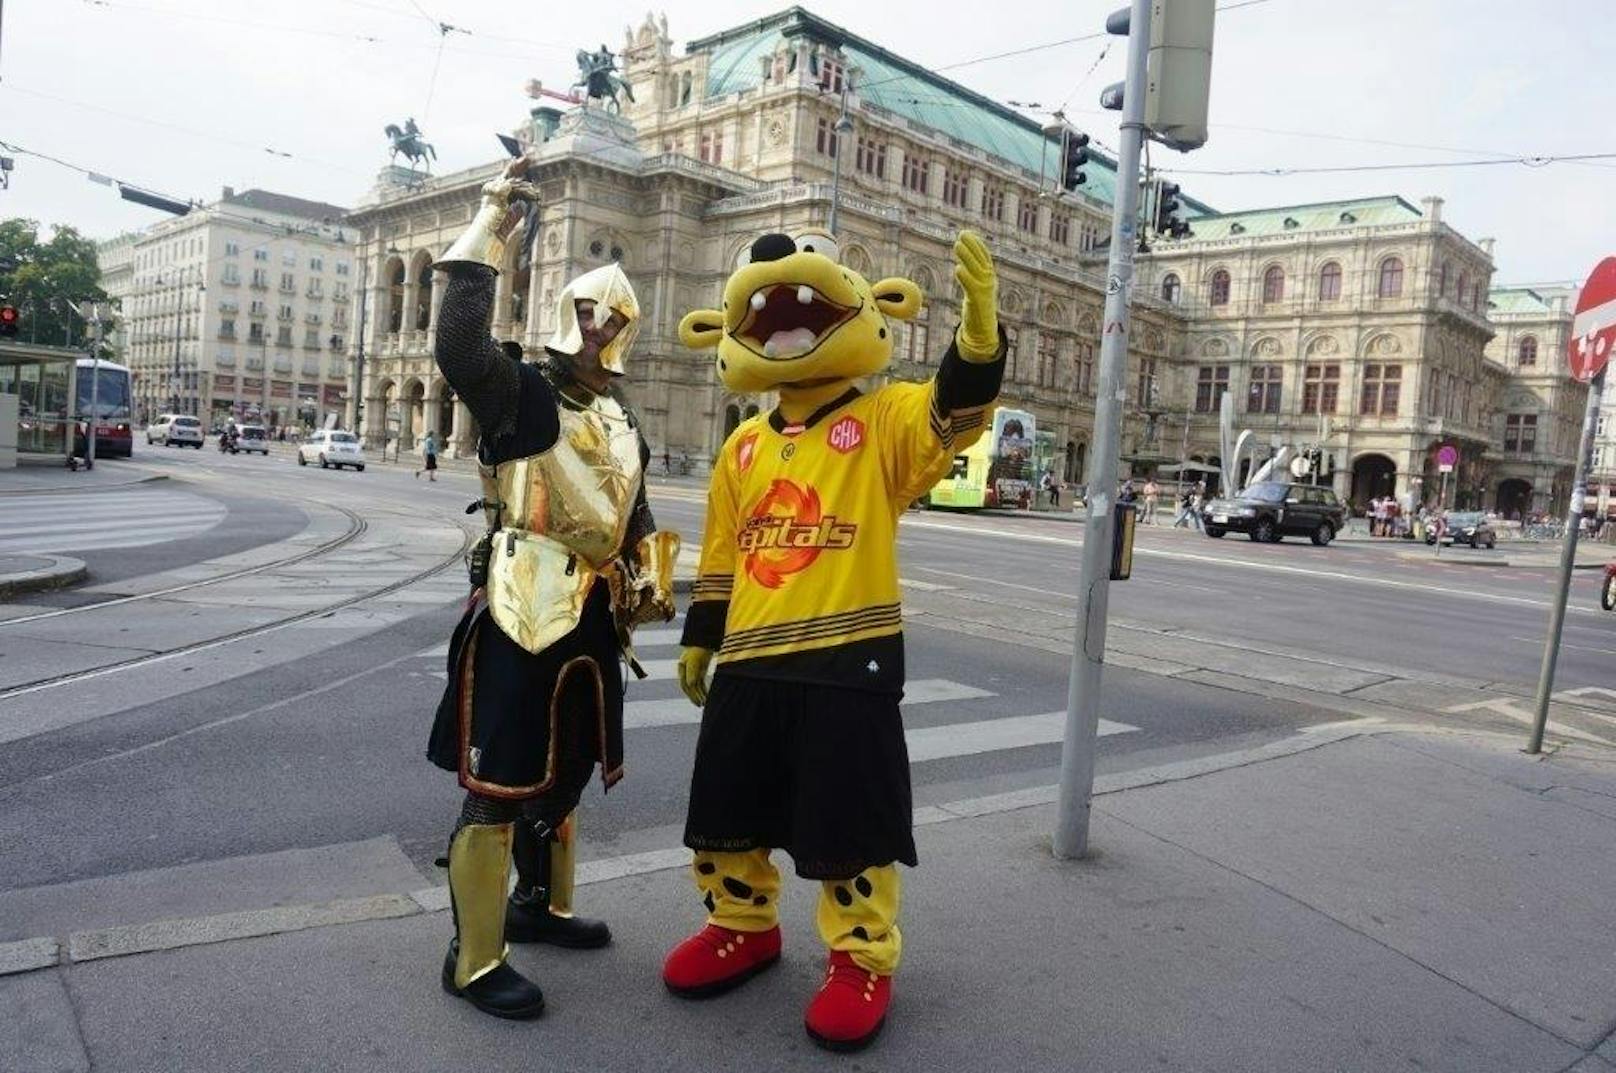 Capitano, das Maskottchen der Vienna Capitals, ist in der Wiener Innenstadt unterwegs - mit einem goldenen Ritter als Begleitung. Was hat es damit auf sich?